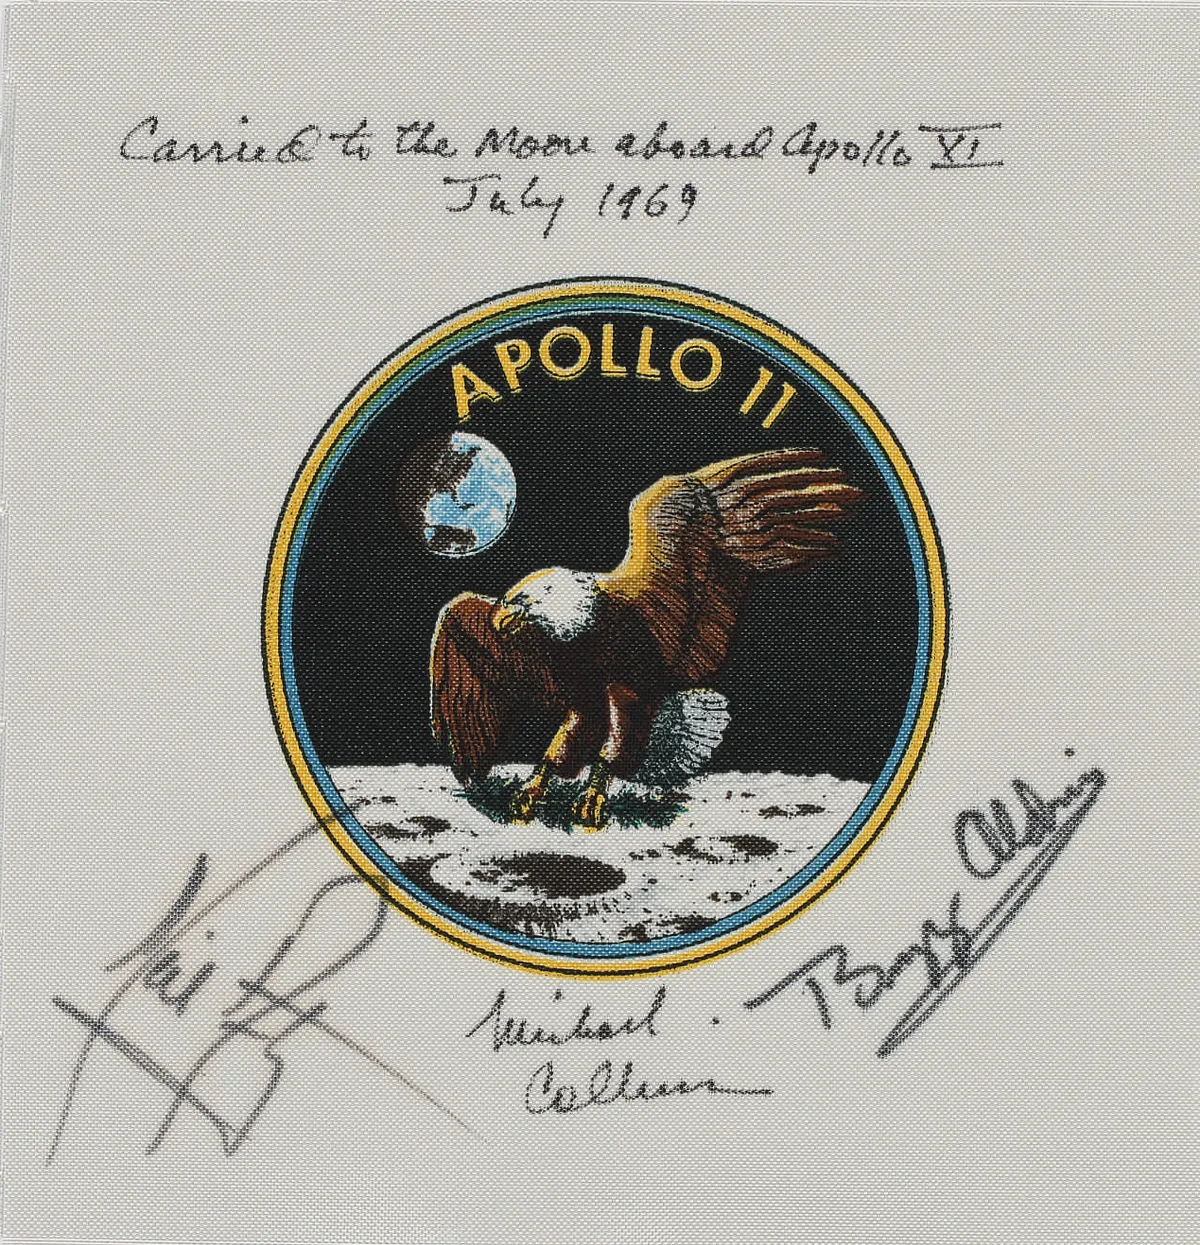 Flown to the Moon on Apollo 11